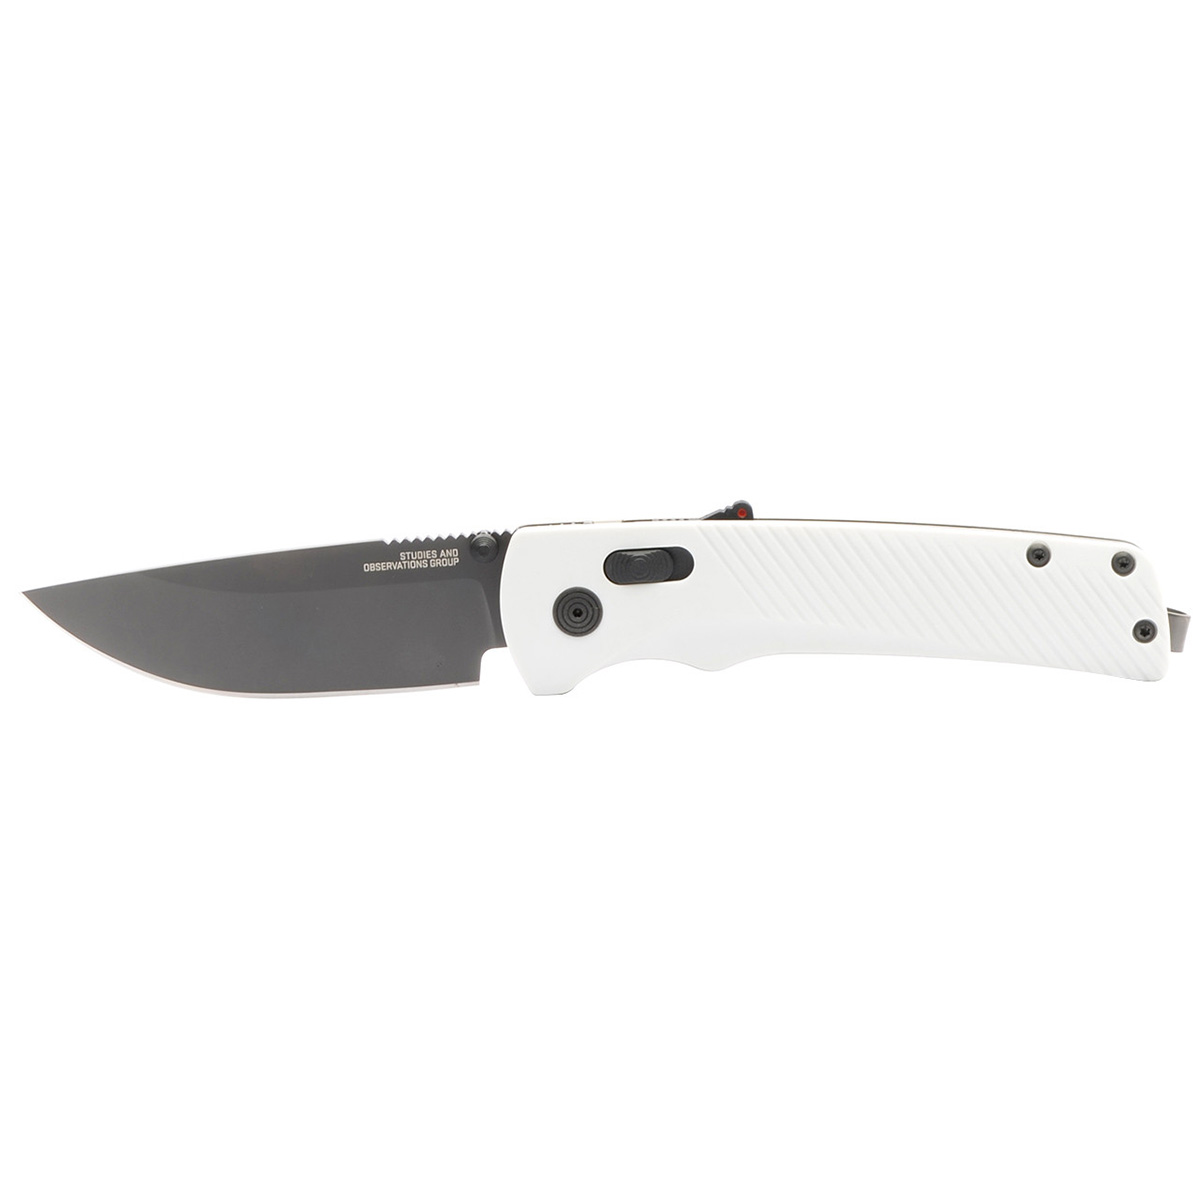 Полуавтоматический складной нож SOG Flash AT Cool Grey, сталь D2, рукоять GRN, белый